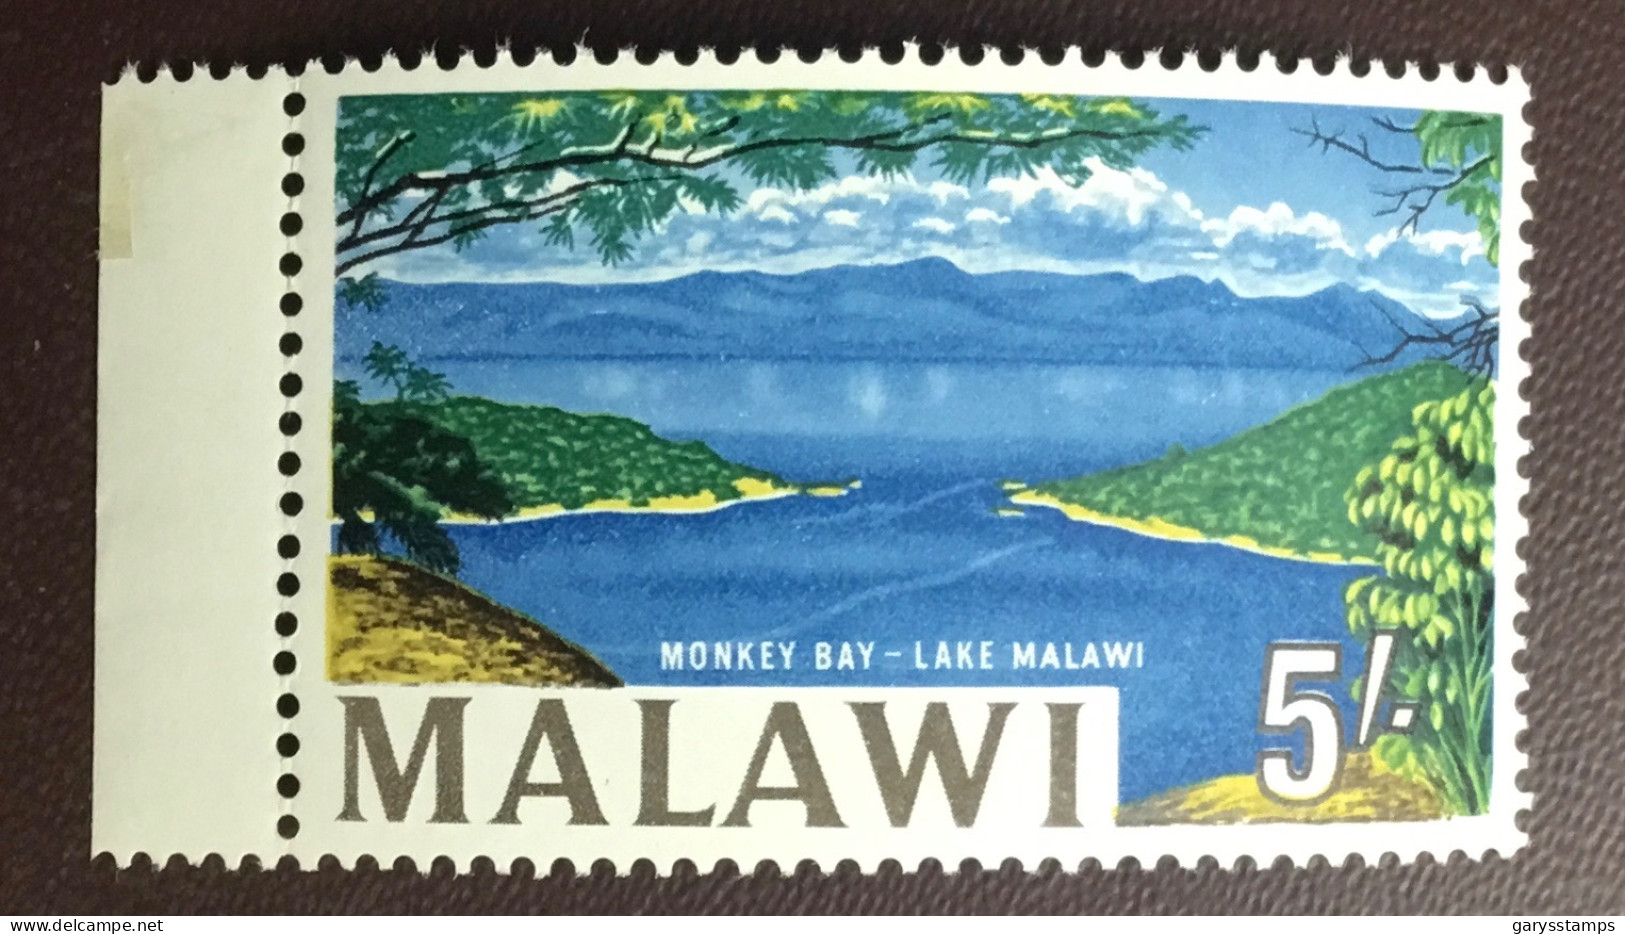 Malawi 1965 5s Definitive Corrected Lake Malawi MNH - Malawi (1964-...)